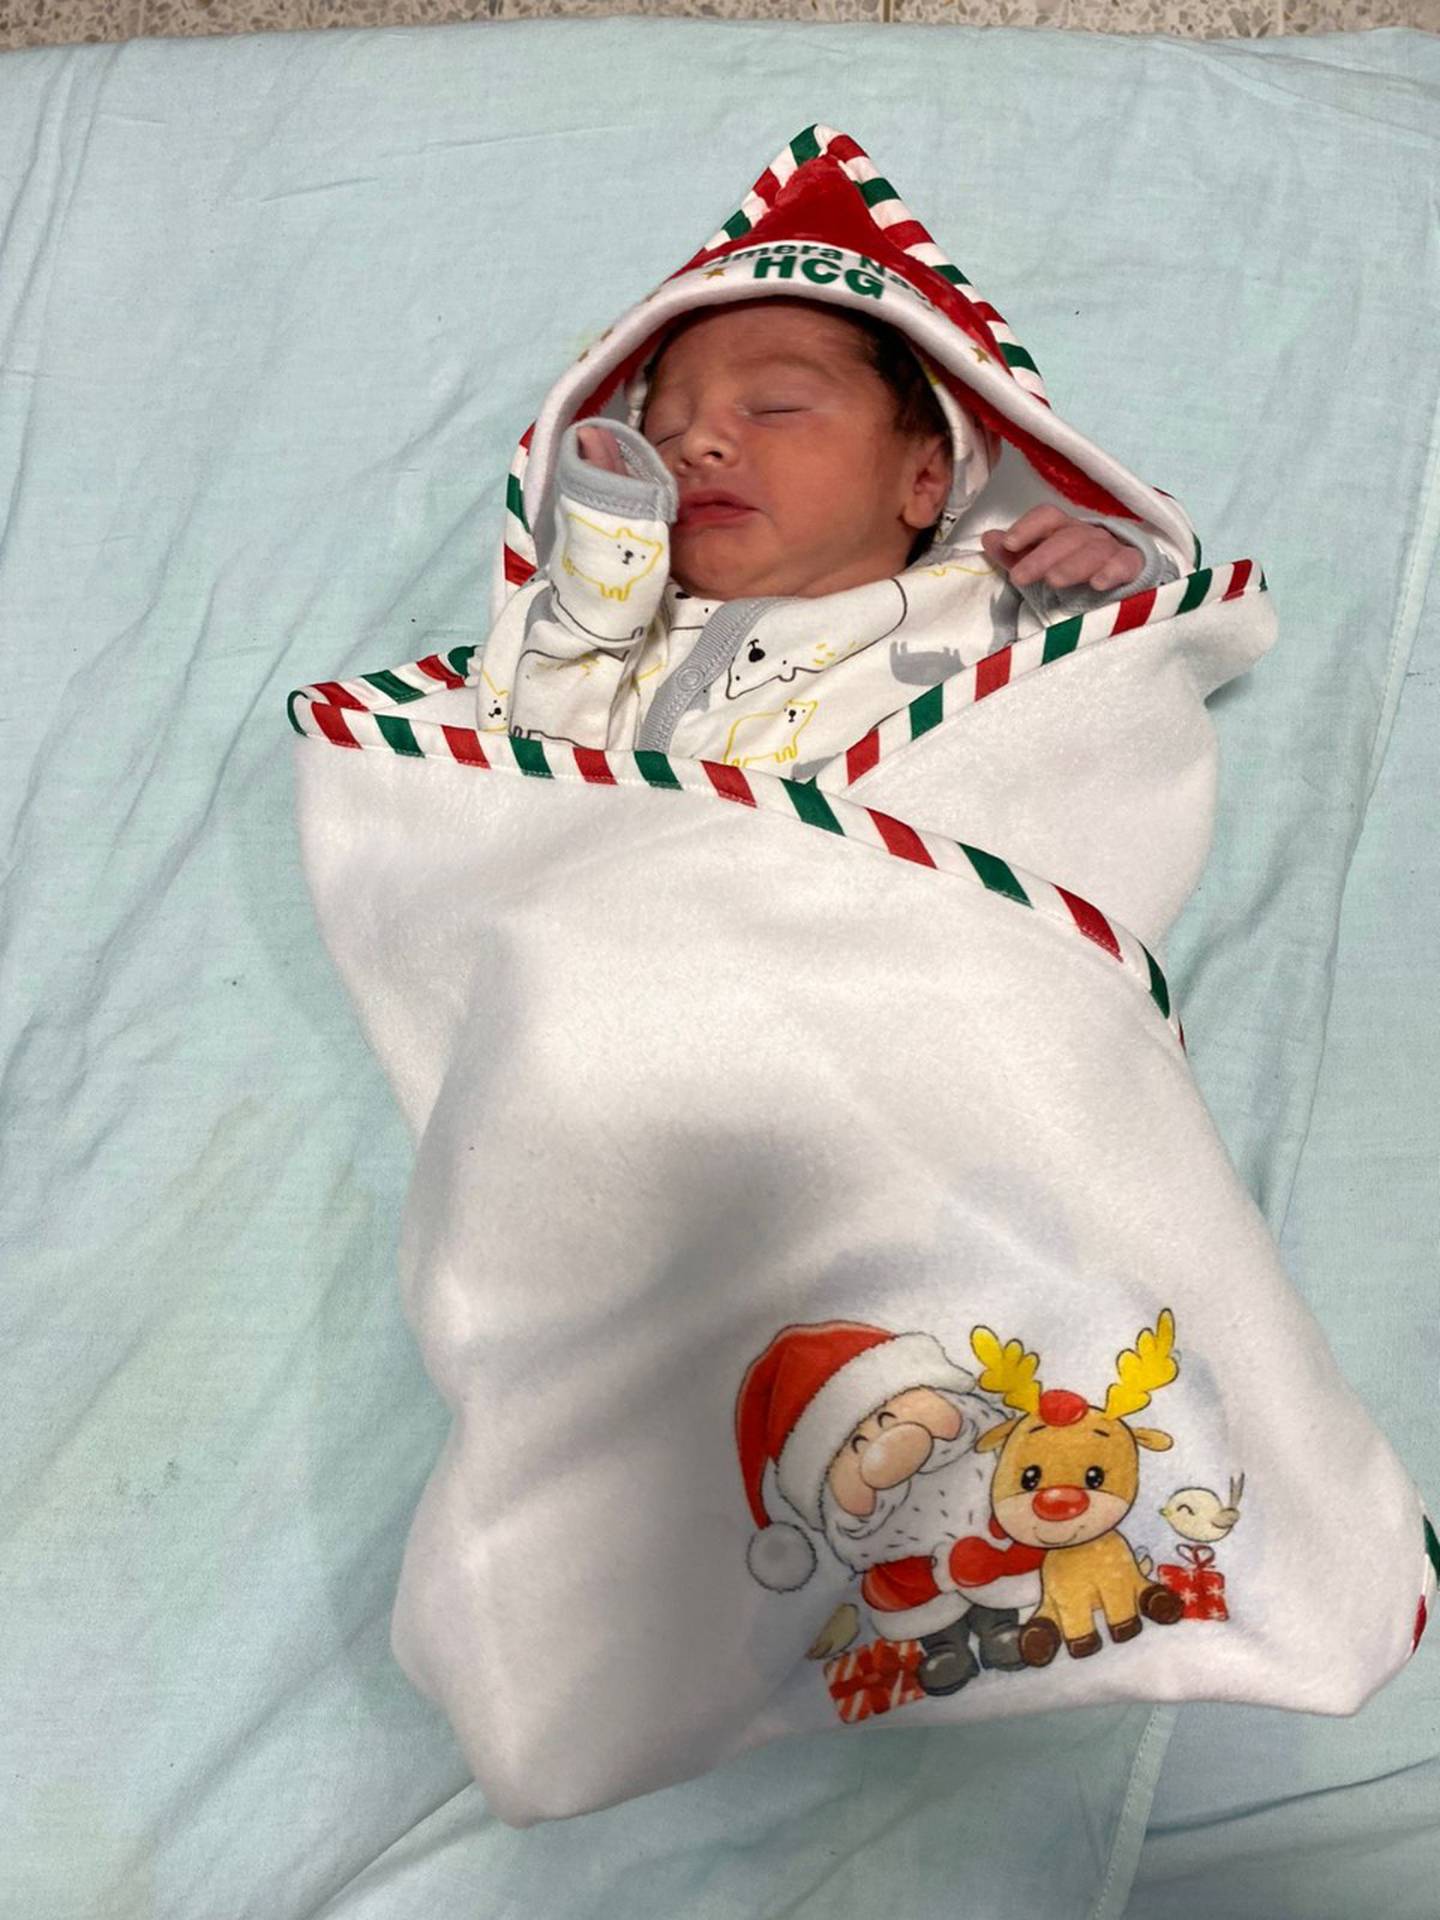 Arropados con una cobijita especial con motivos navideños; así recibirá el personal del hospital Rafael Ángel Calderón Guardia a los bebés que nazcan este 24 de diciembre a partir de la media noche